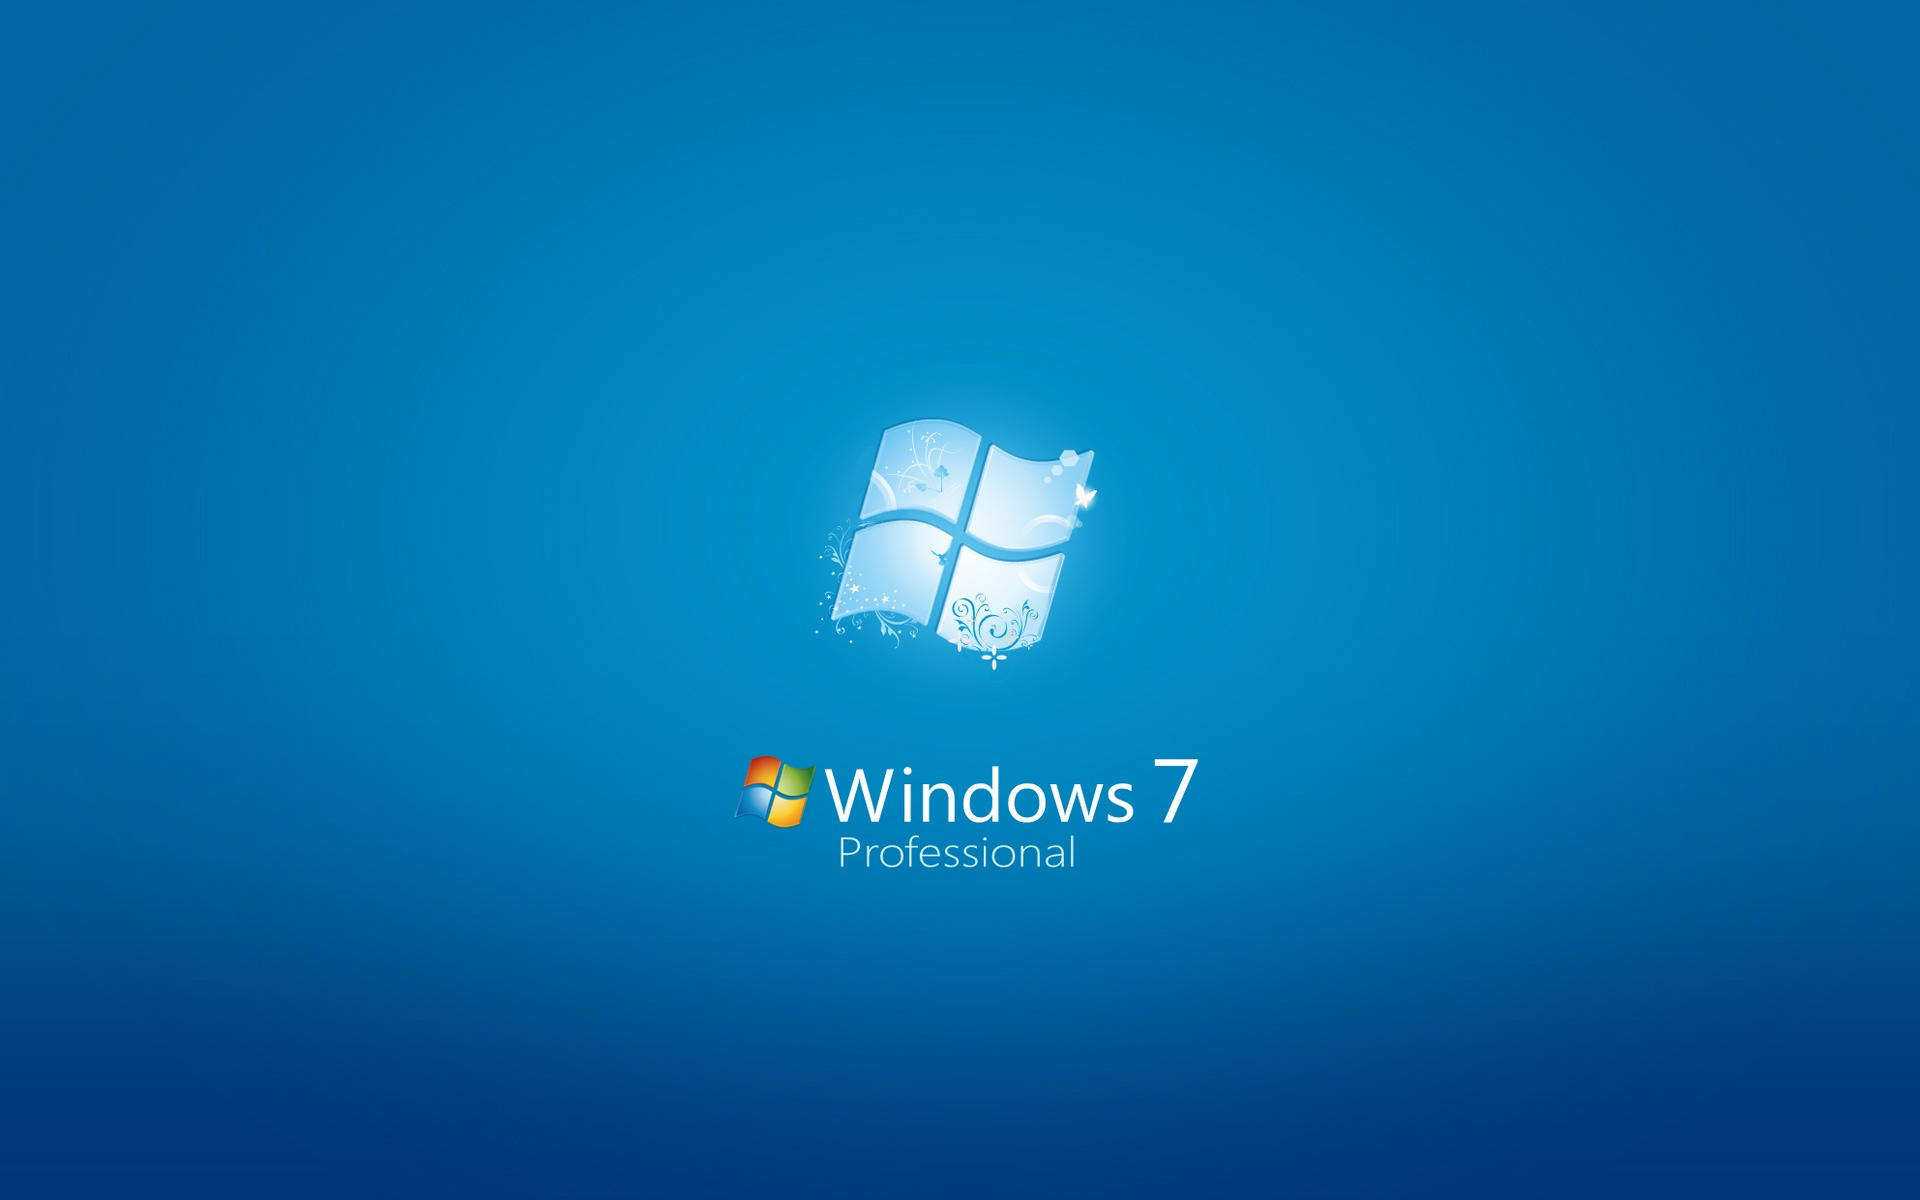 Windows 7 Aesthetic Blue Logo Wallpaper